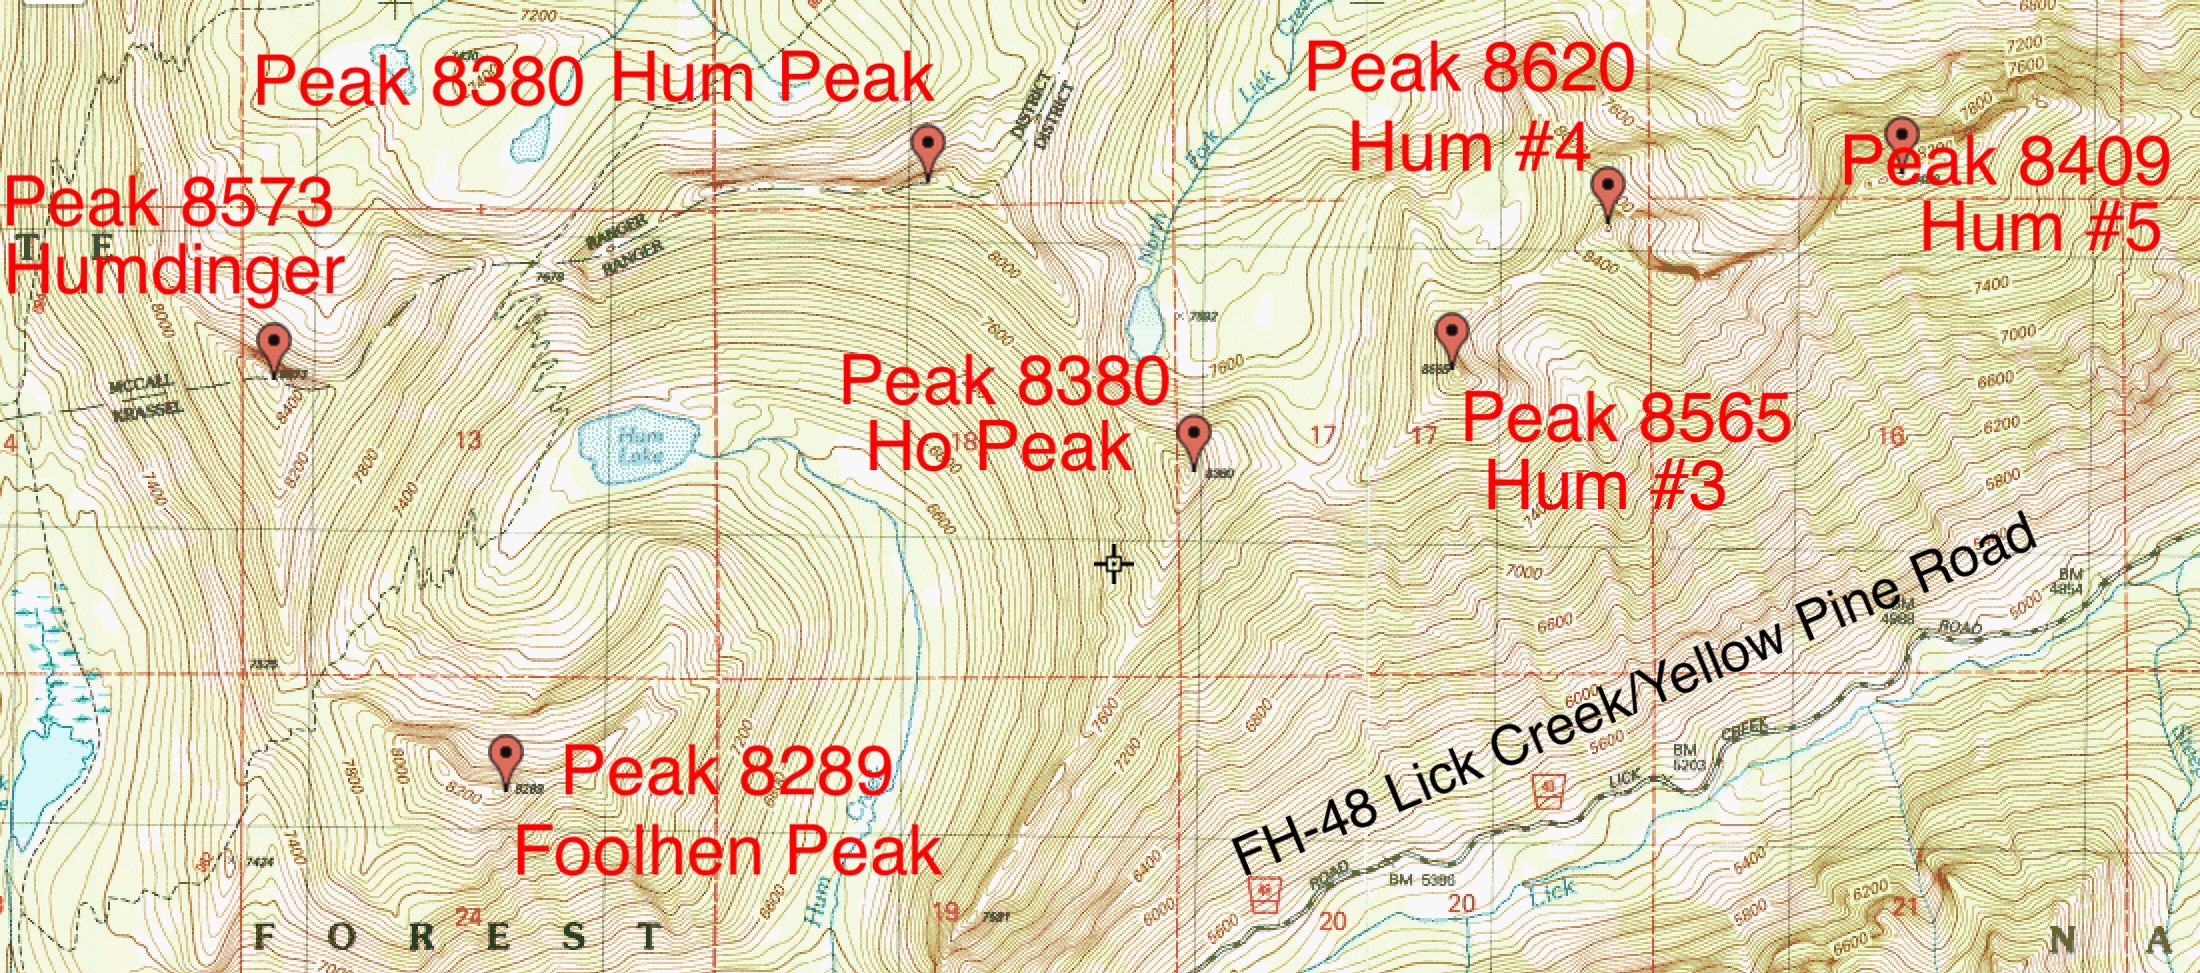 Hum Ridge Peaks.